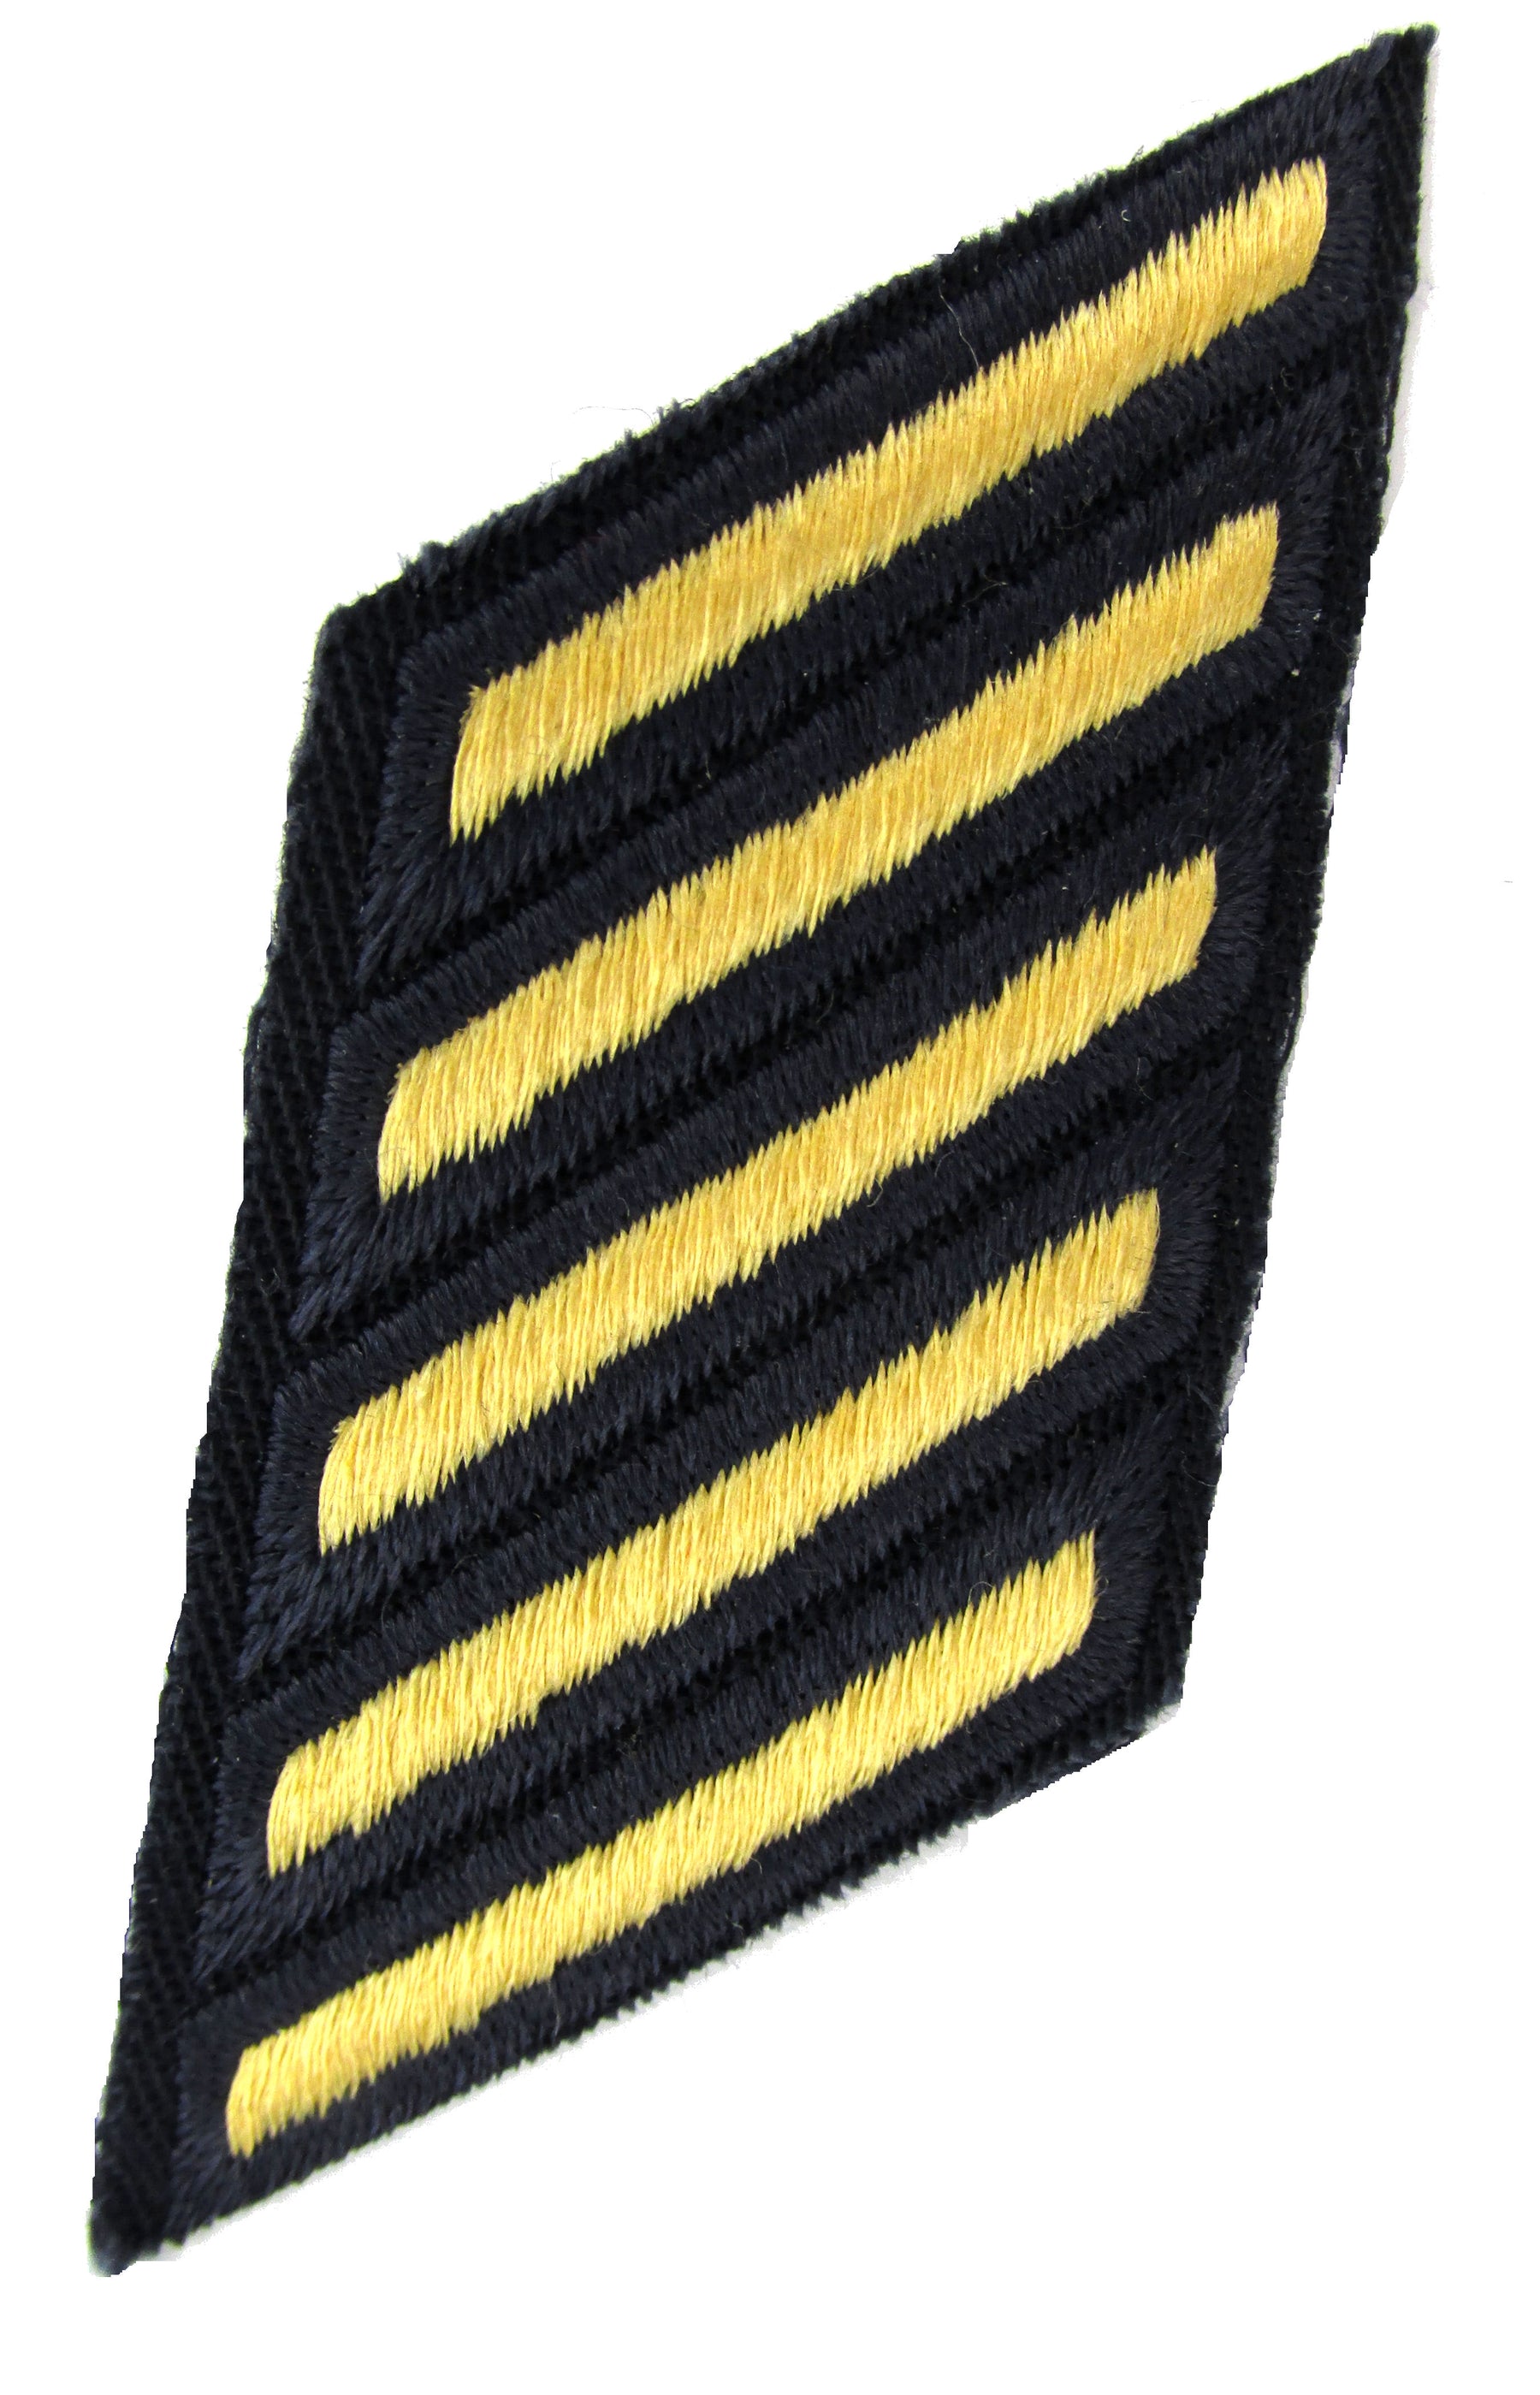 U.S. Army Service Stripes